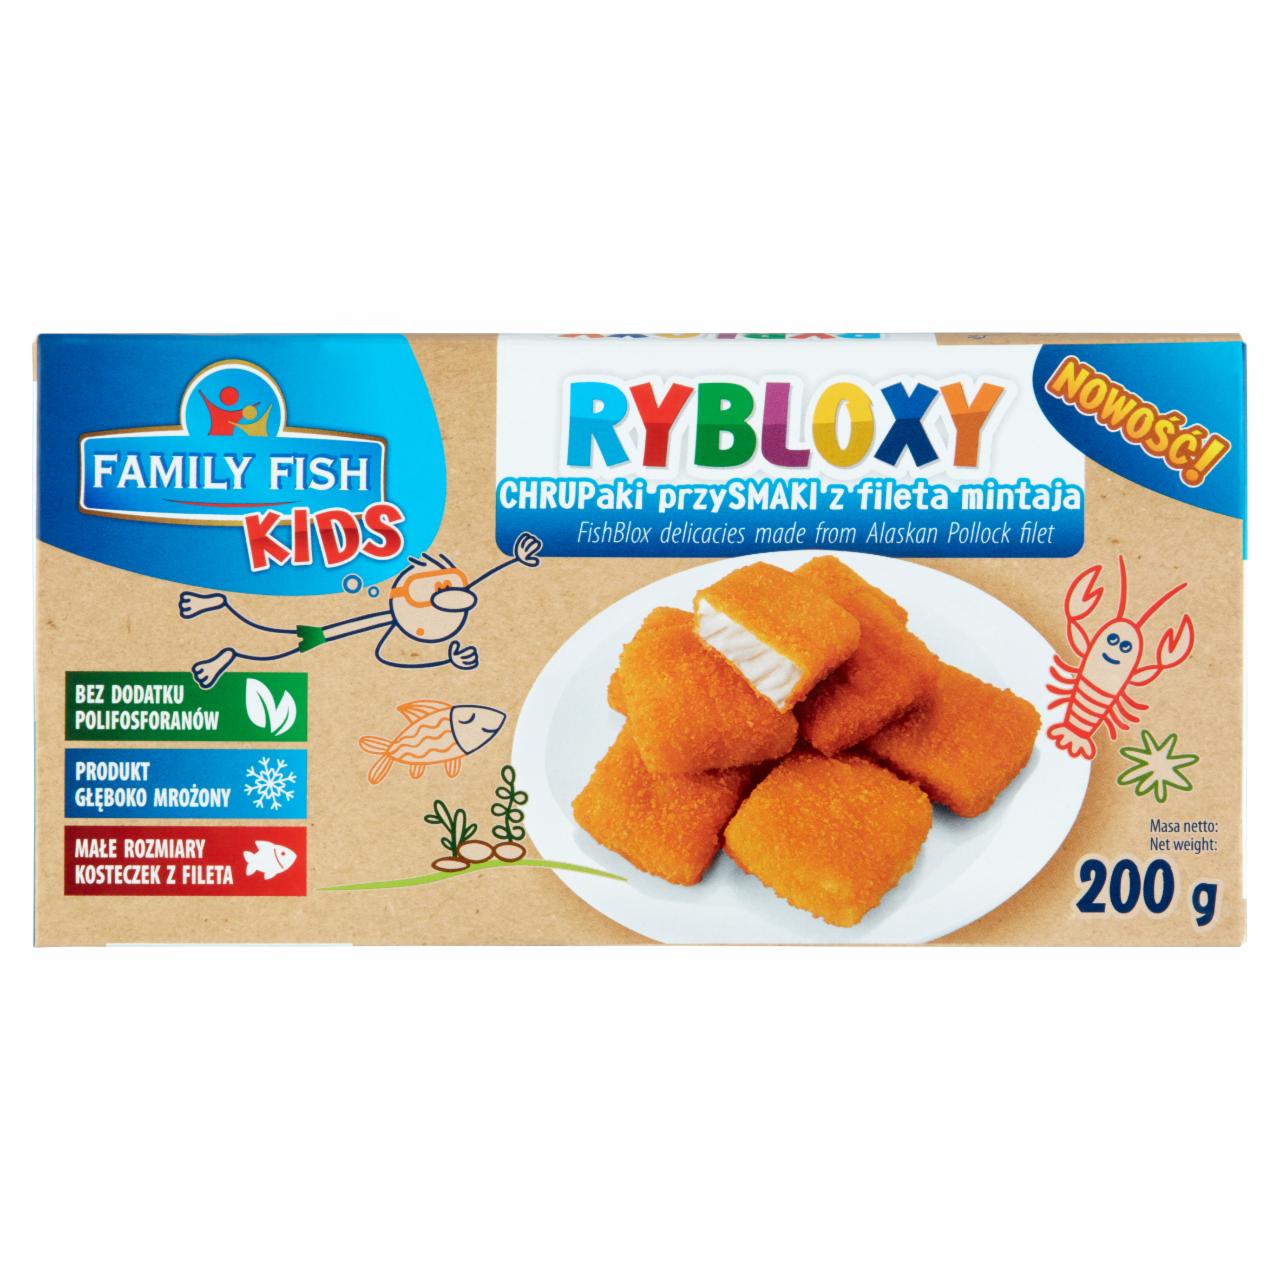 Zdjęcia - Family Fish Kids Rybloxy Chrupaki przysmaki z fileta mintaja 200 g